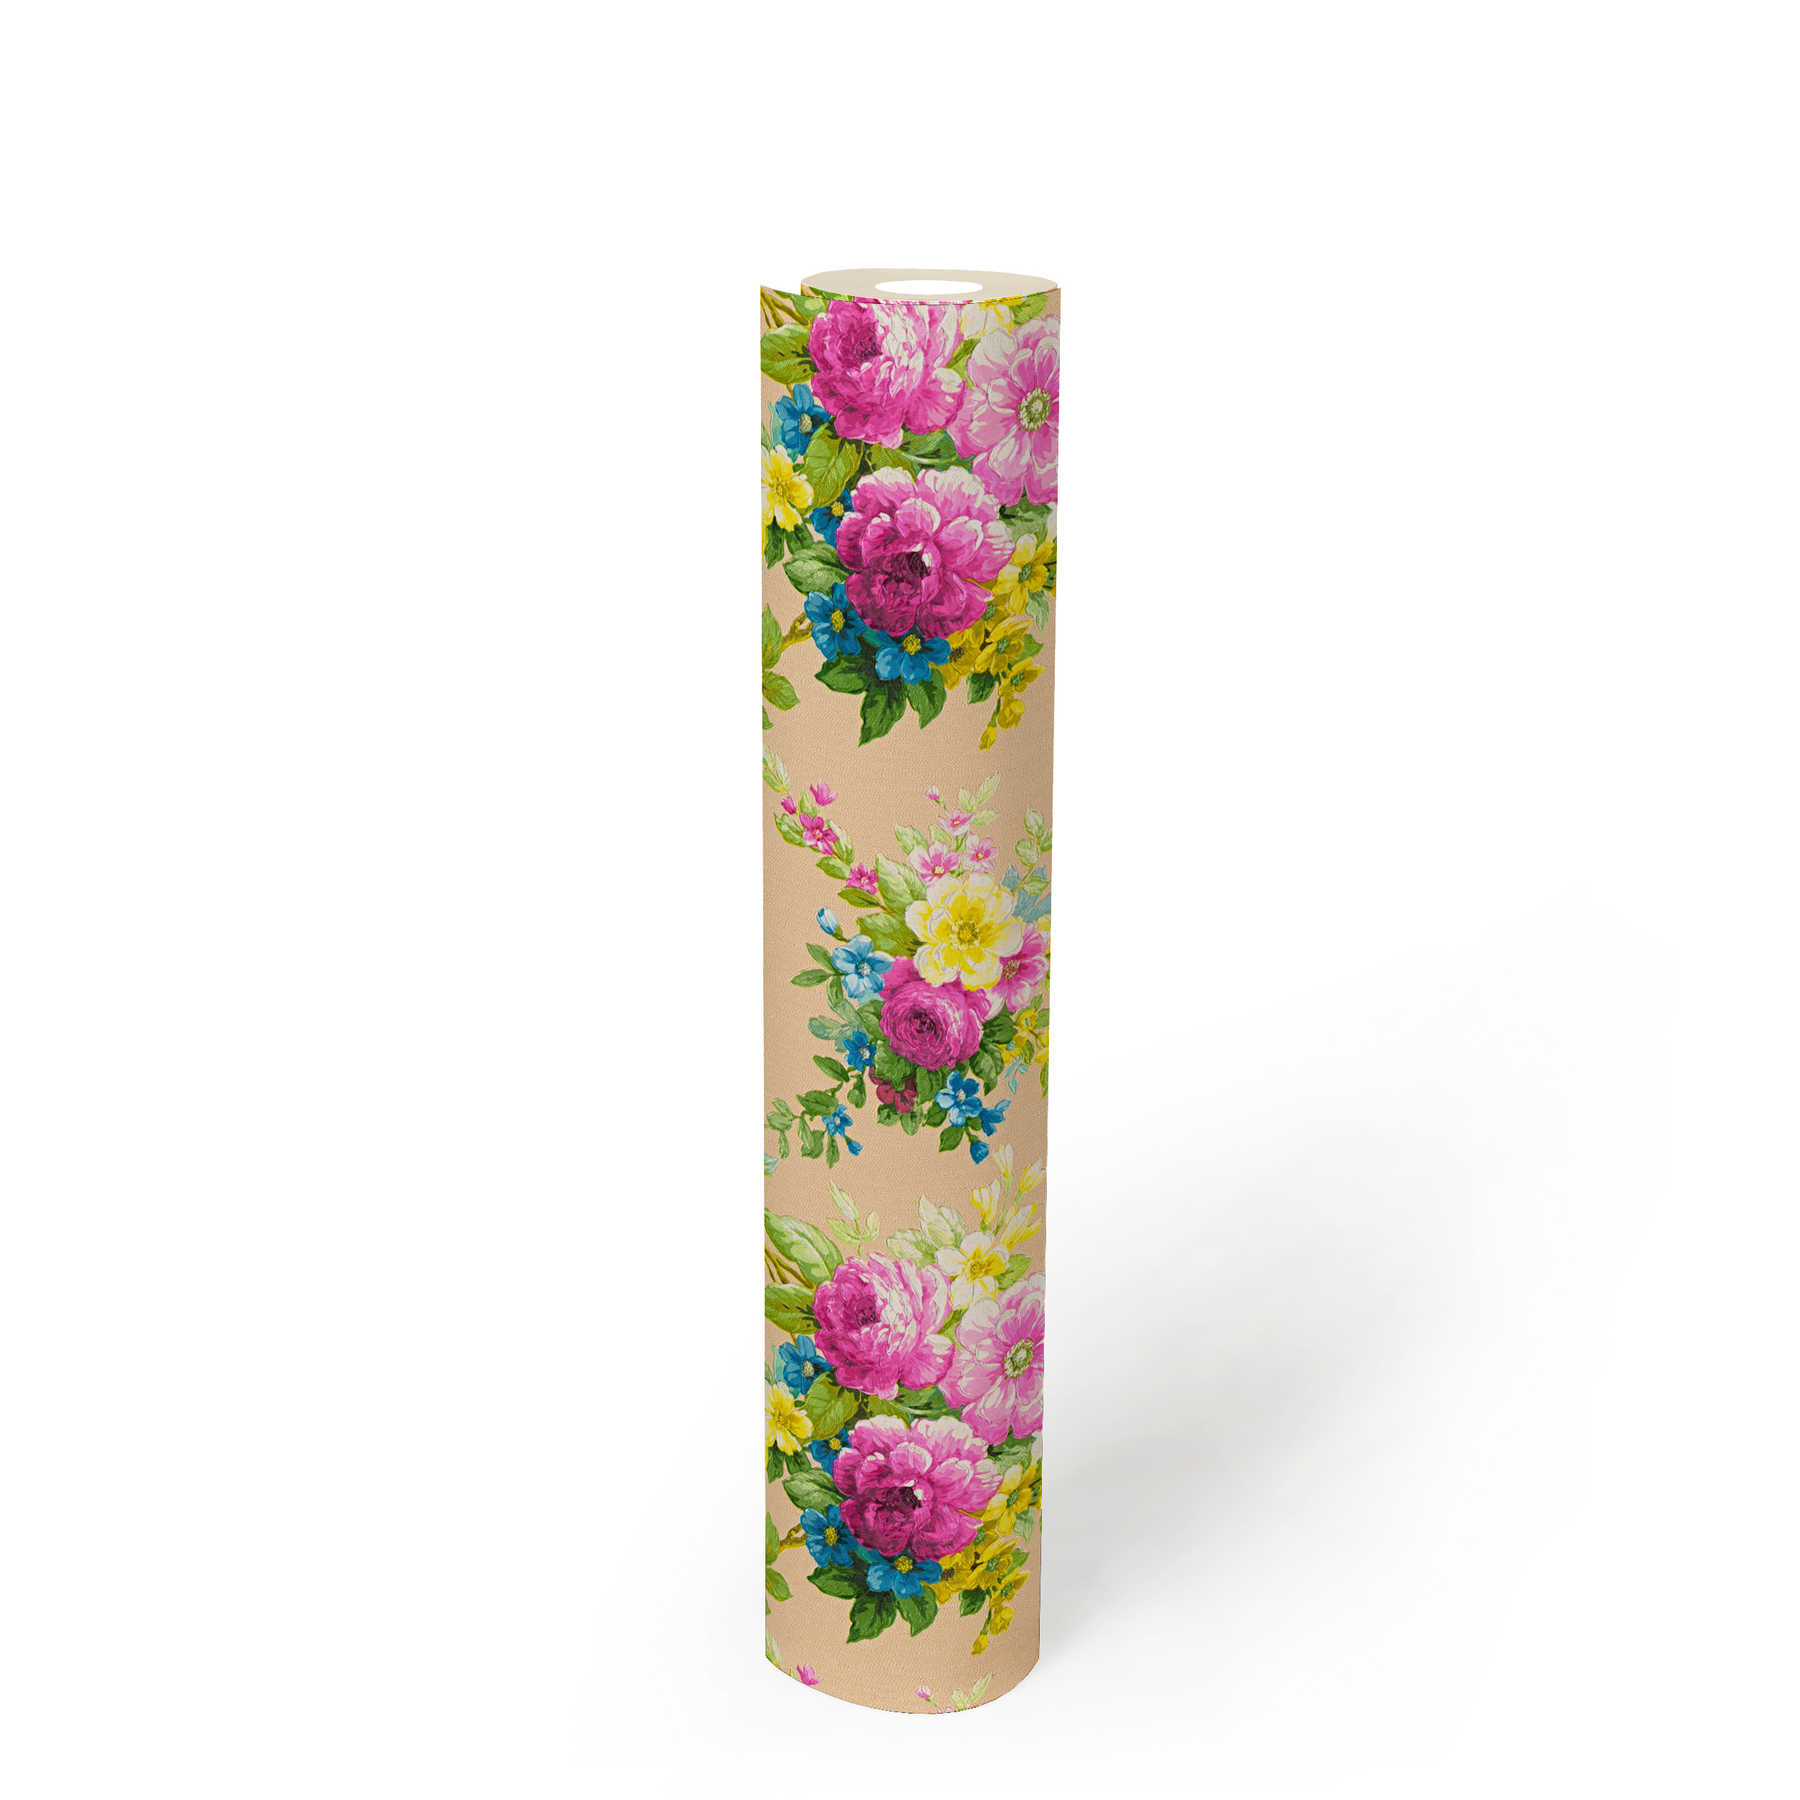             Papier peint Décor floral Ornement floral avec effet métallique - multicolore
        